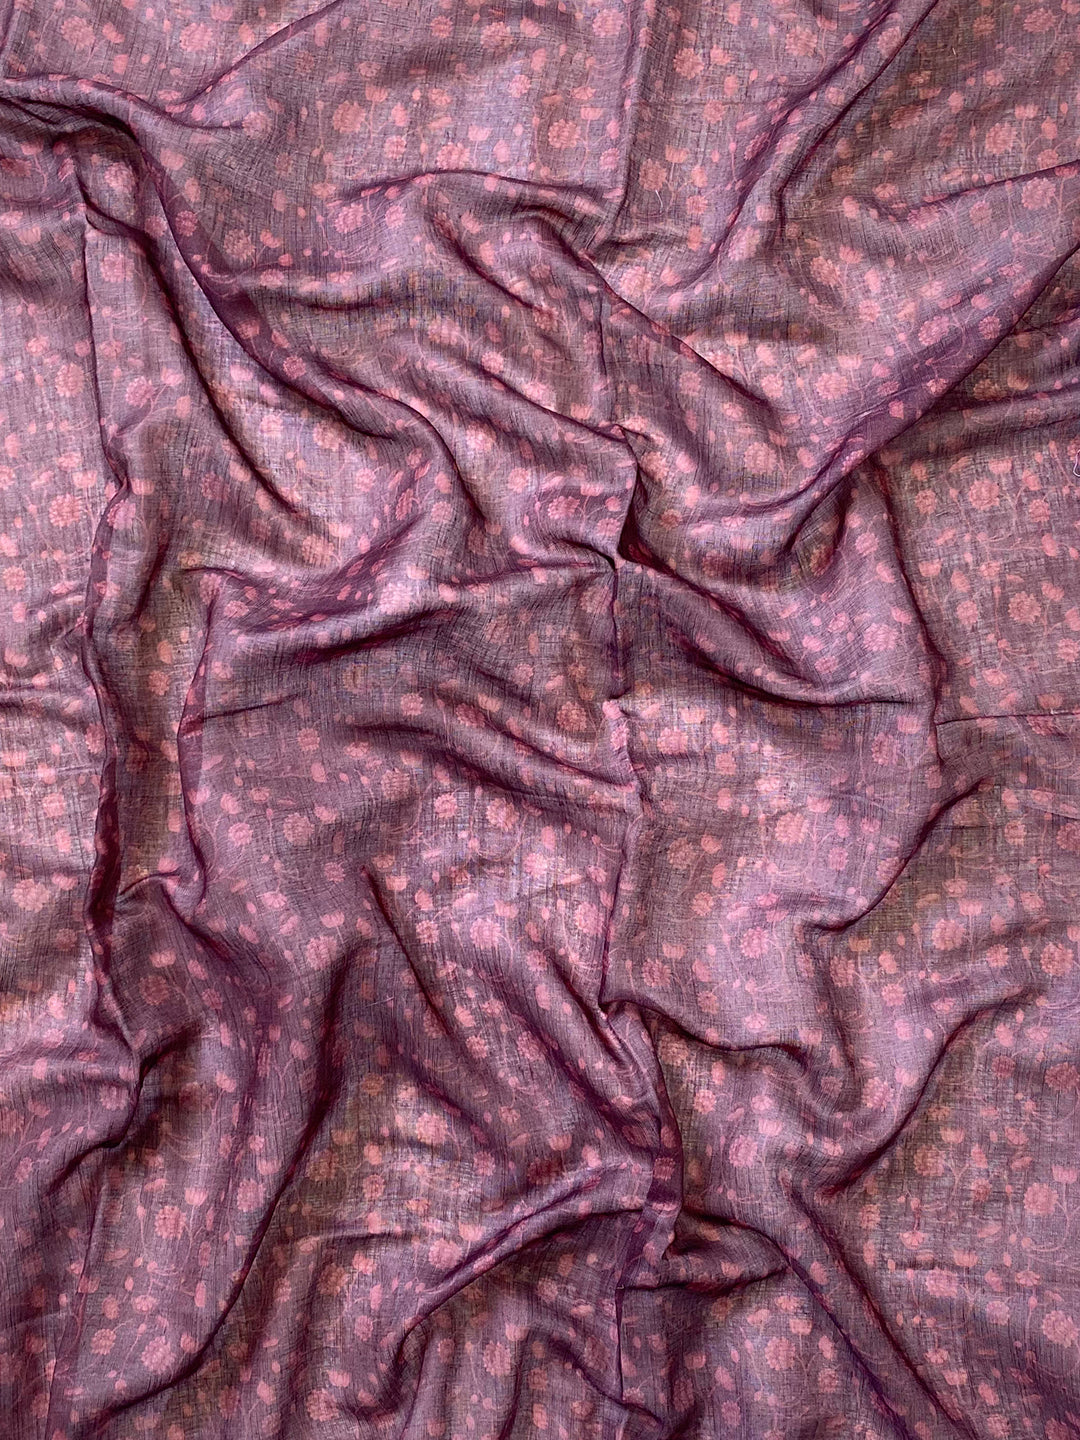 Soft Linen Ombre Pichwai Printed Wine Colour Saree